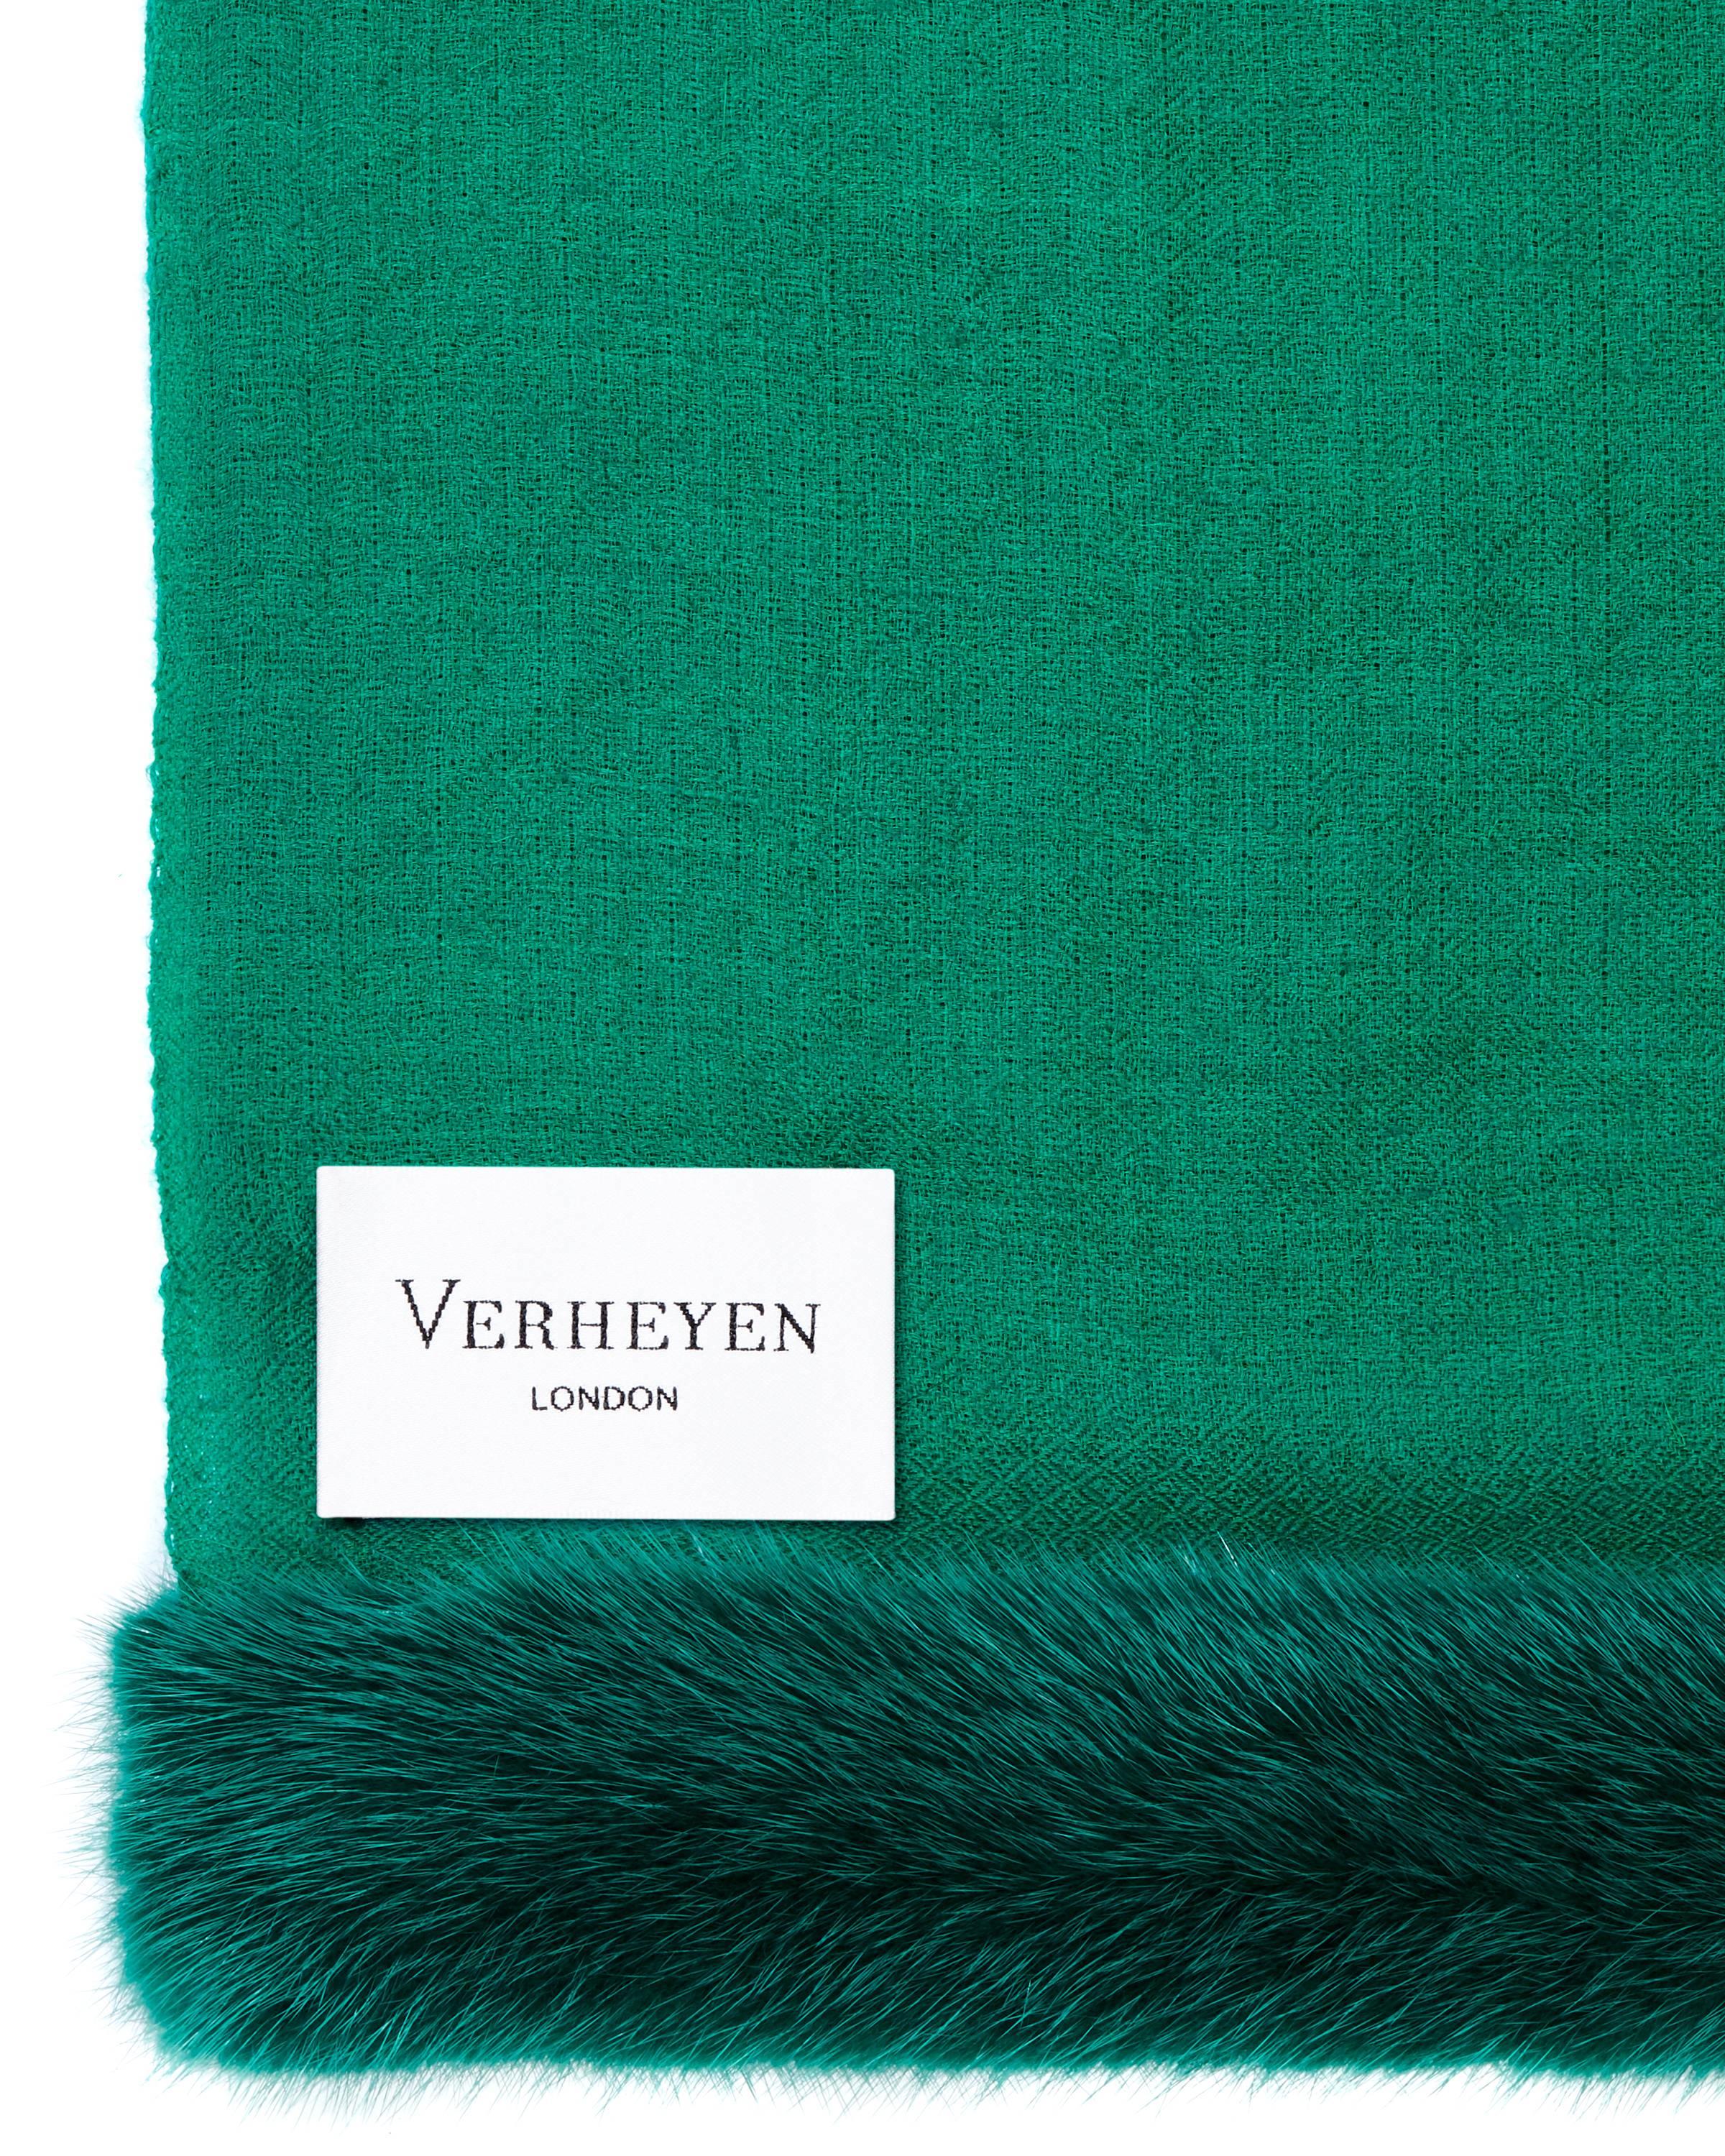 Verheyen London Handwoven Mink Fur Trimmed Cashmere Shawl in Emerald Green  1